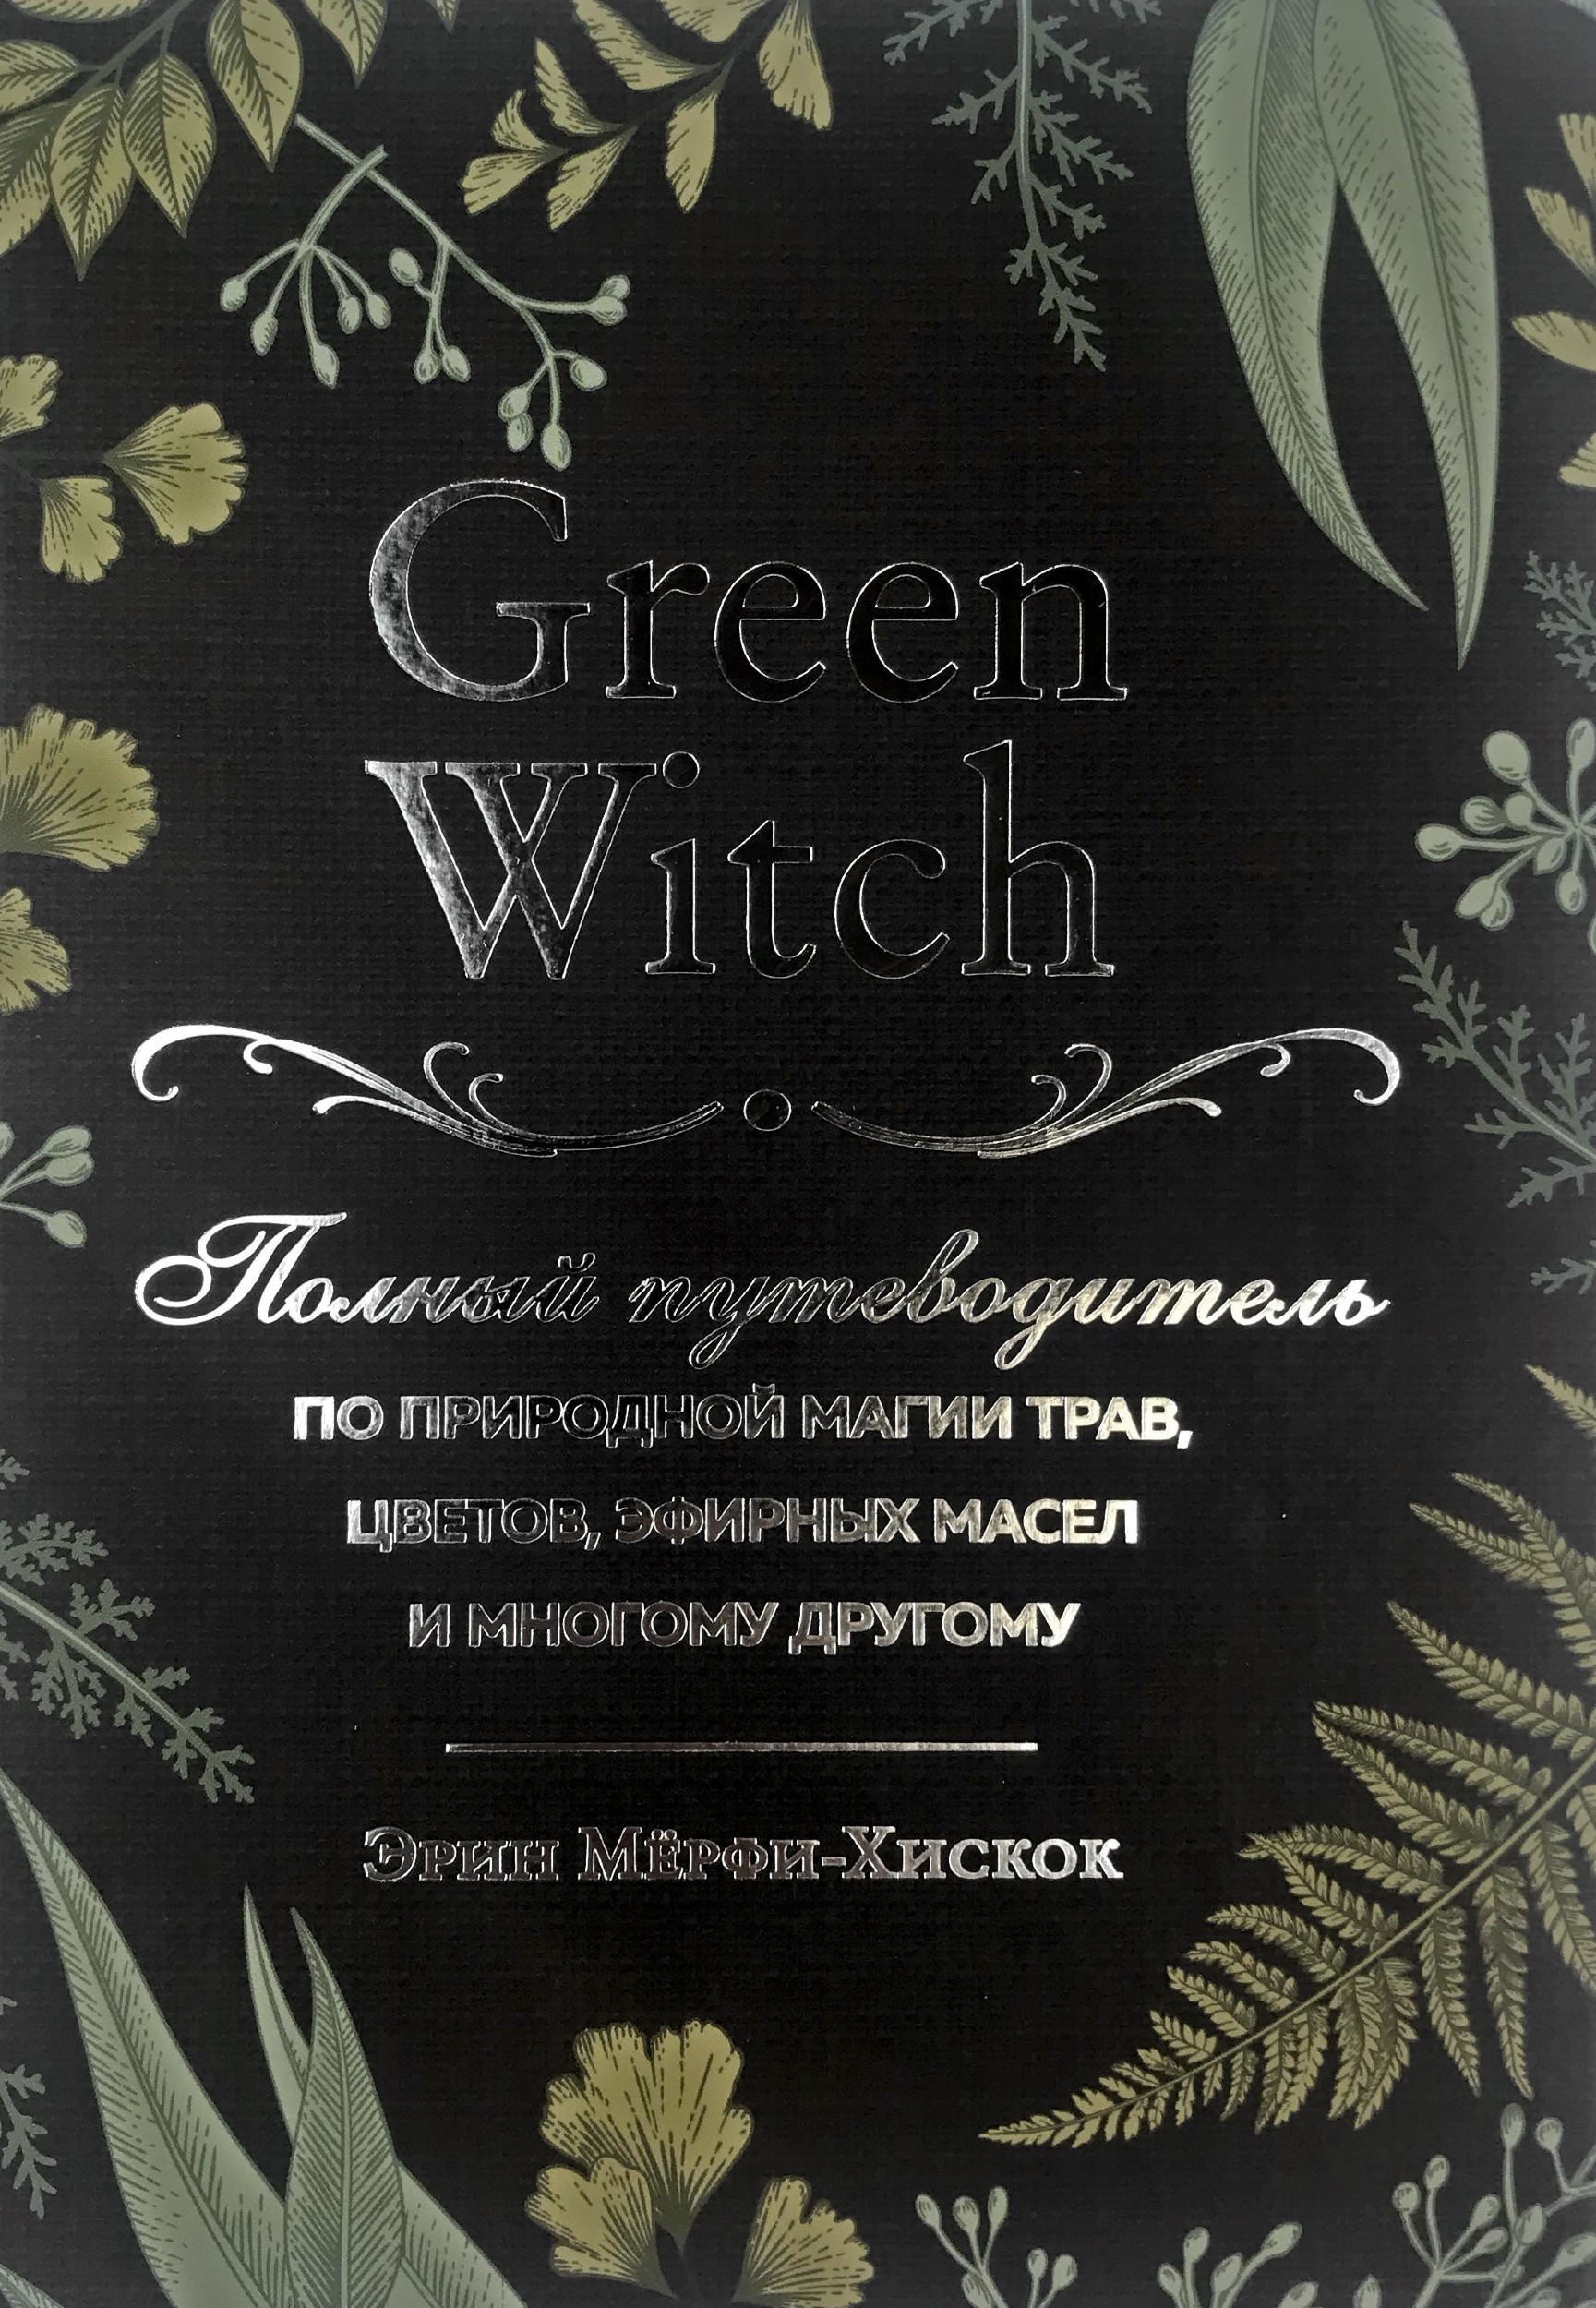 Green Witch. Полный путеводитель по природной магии трав, цветов, эфирных масел и многому другому. Автор — Эрин Мёрфи-Хискок. 